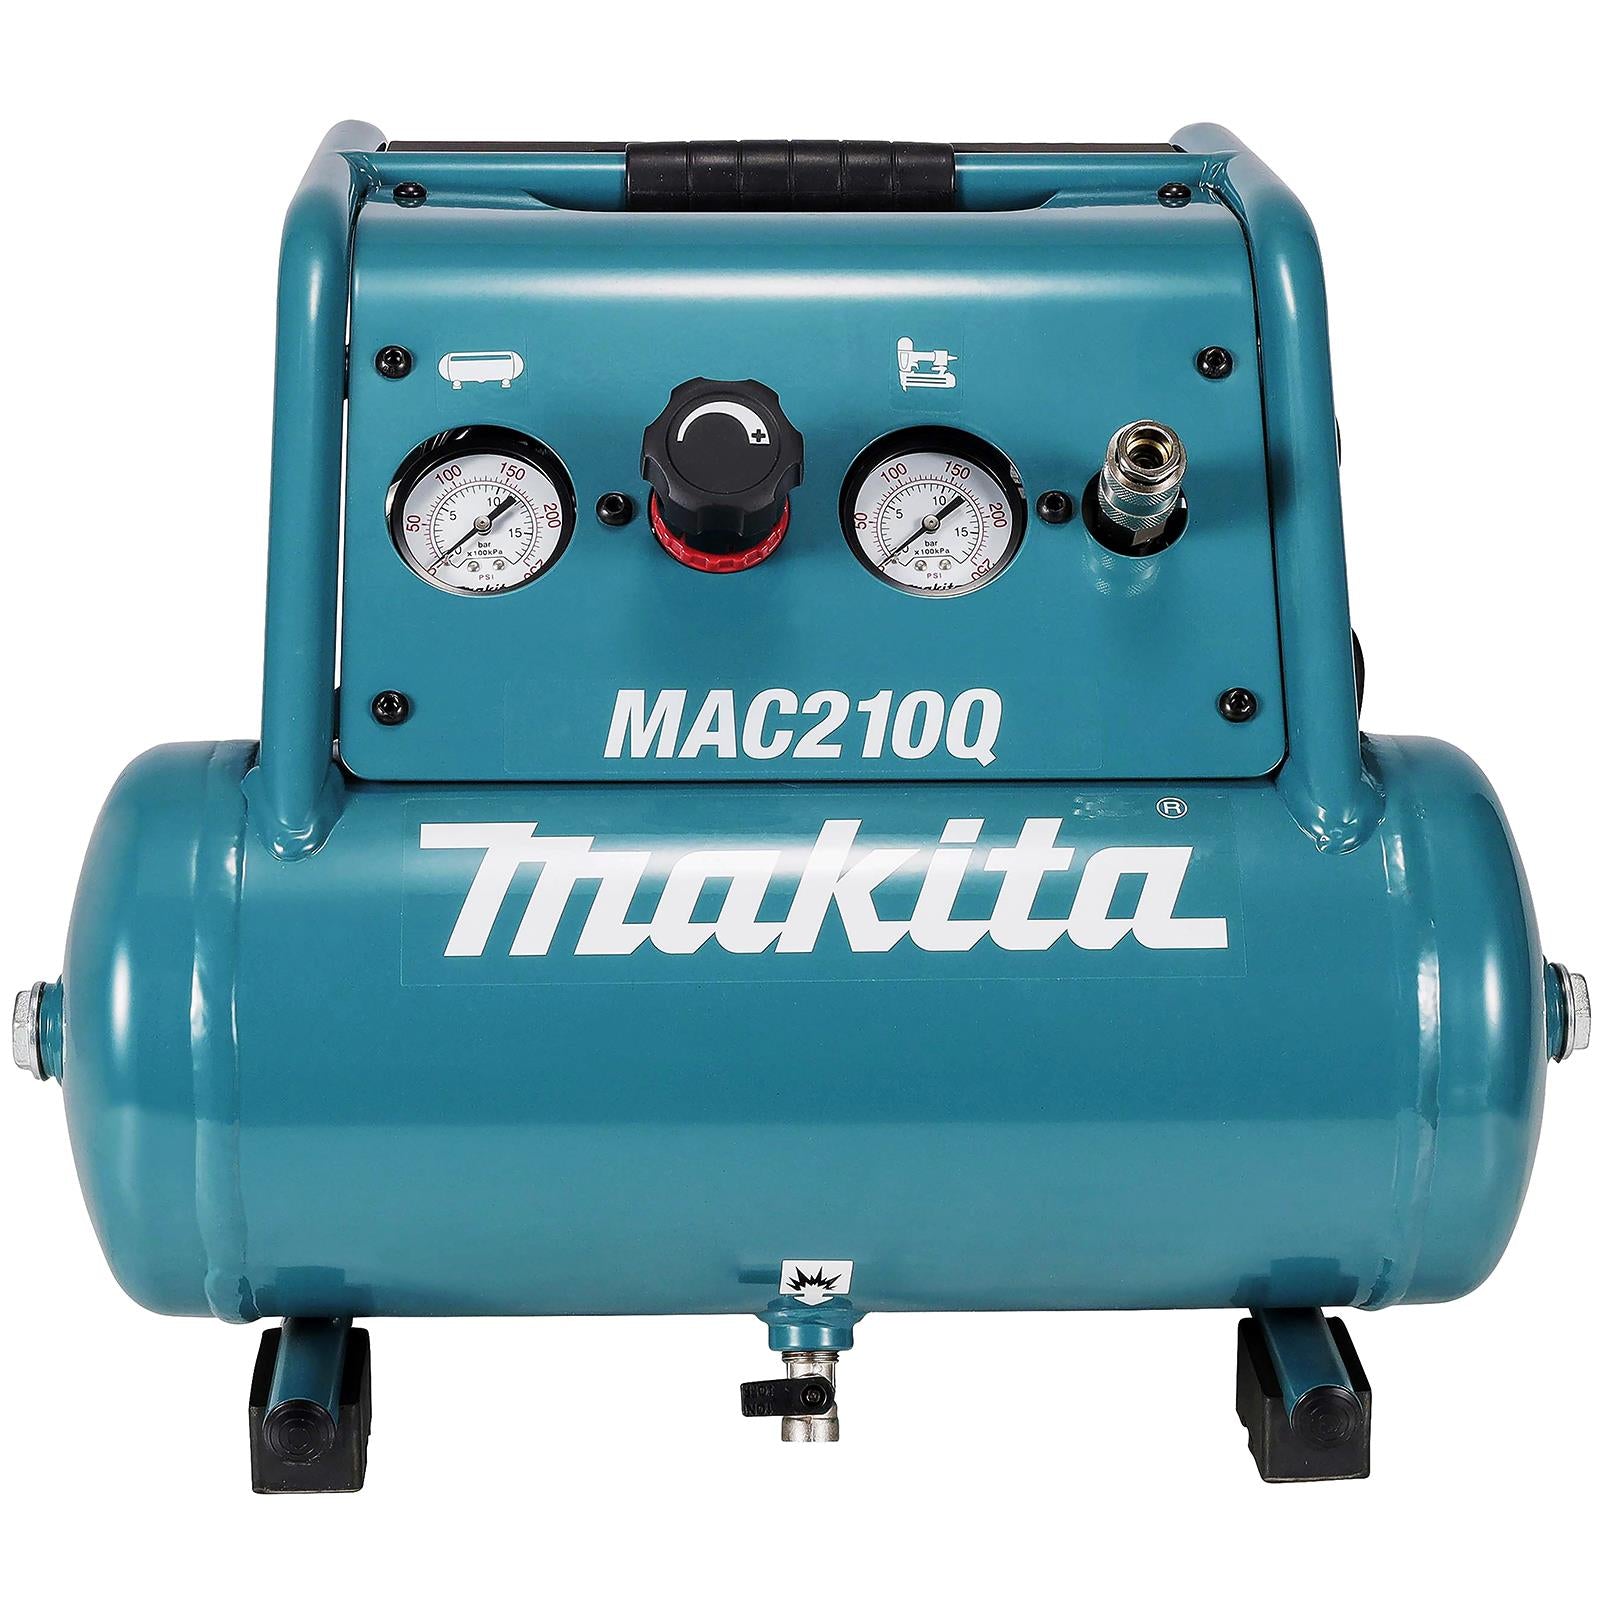 Makita Air Compressor Compact 7.6L 9.3 Bar 650W Choose Voltage 110V or 240V MAC210Q